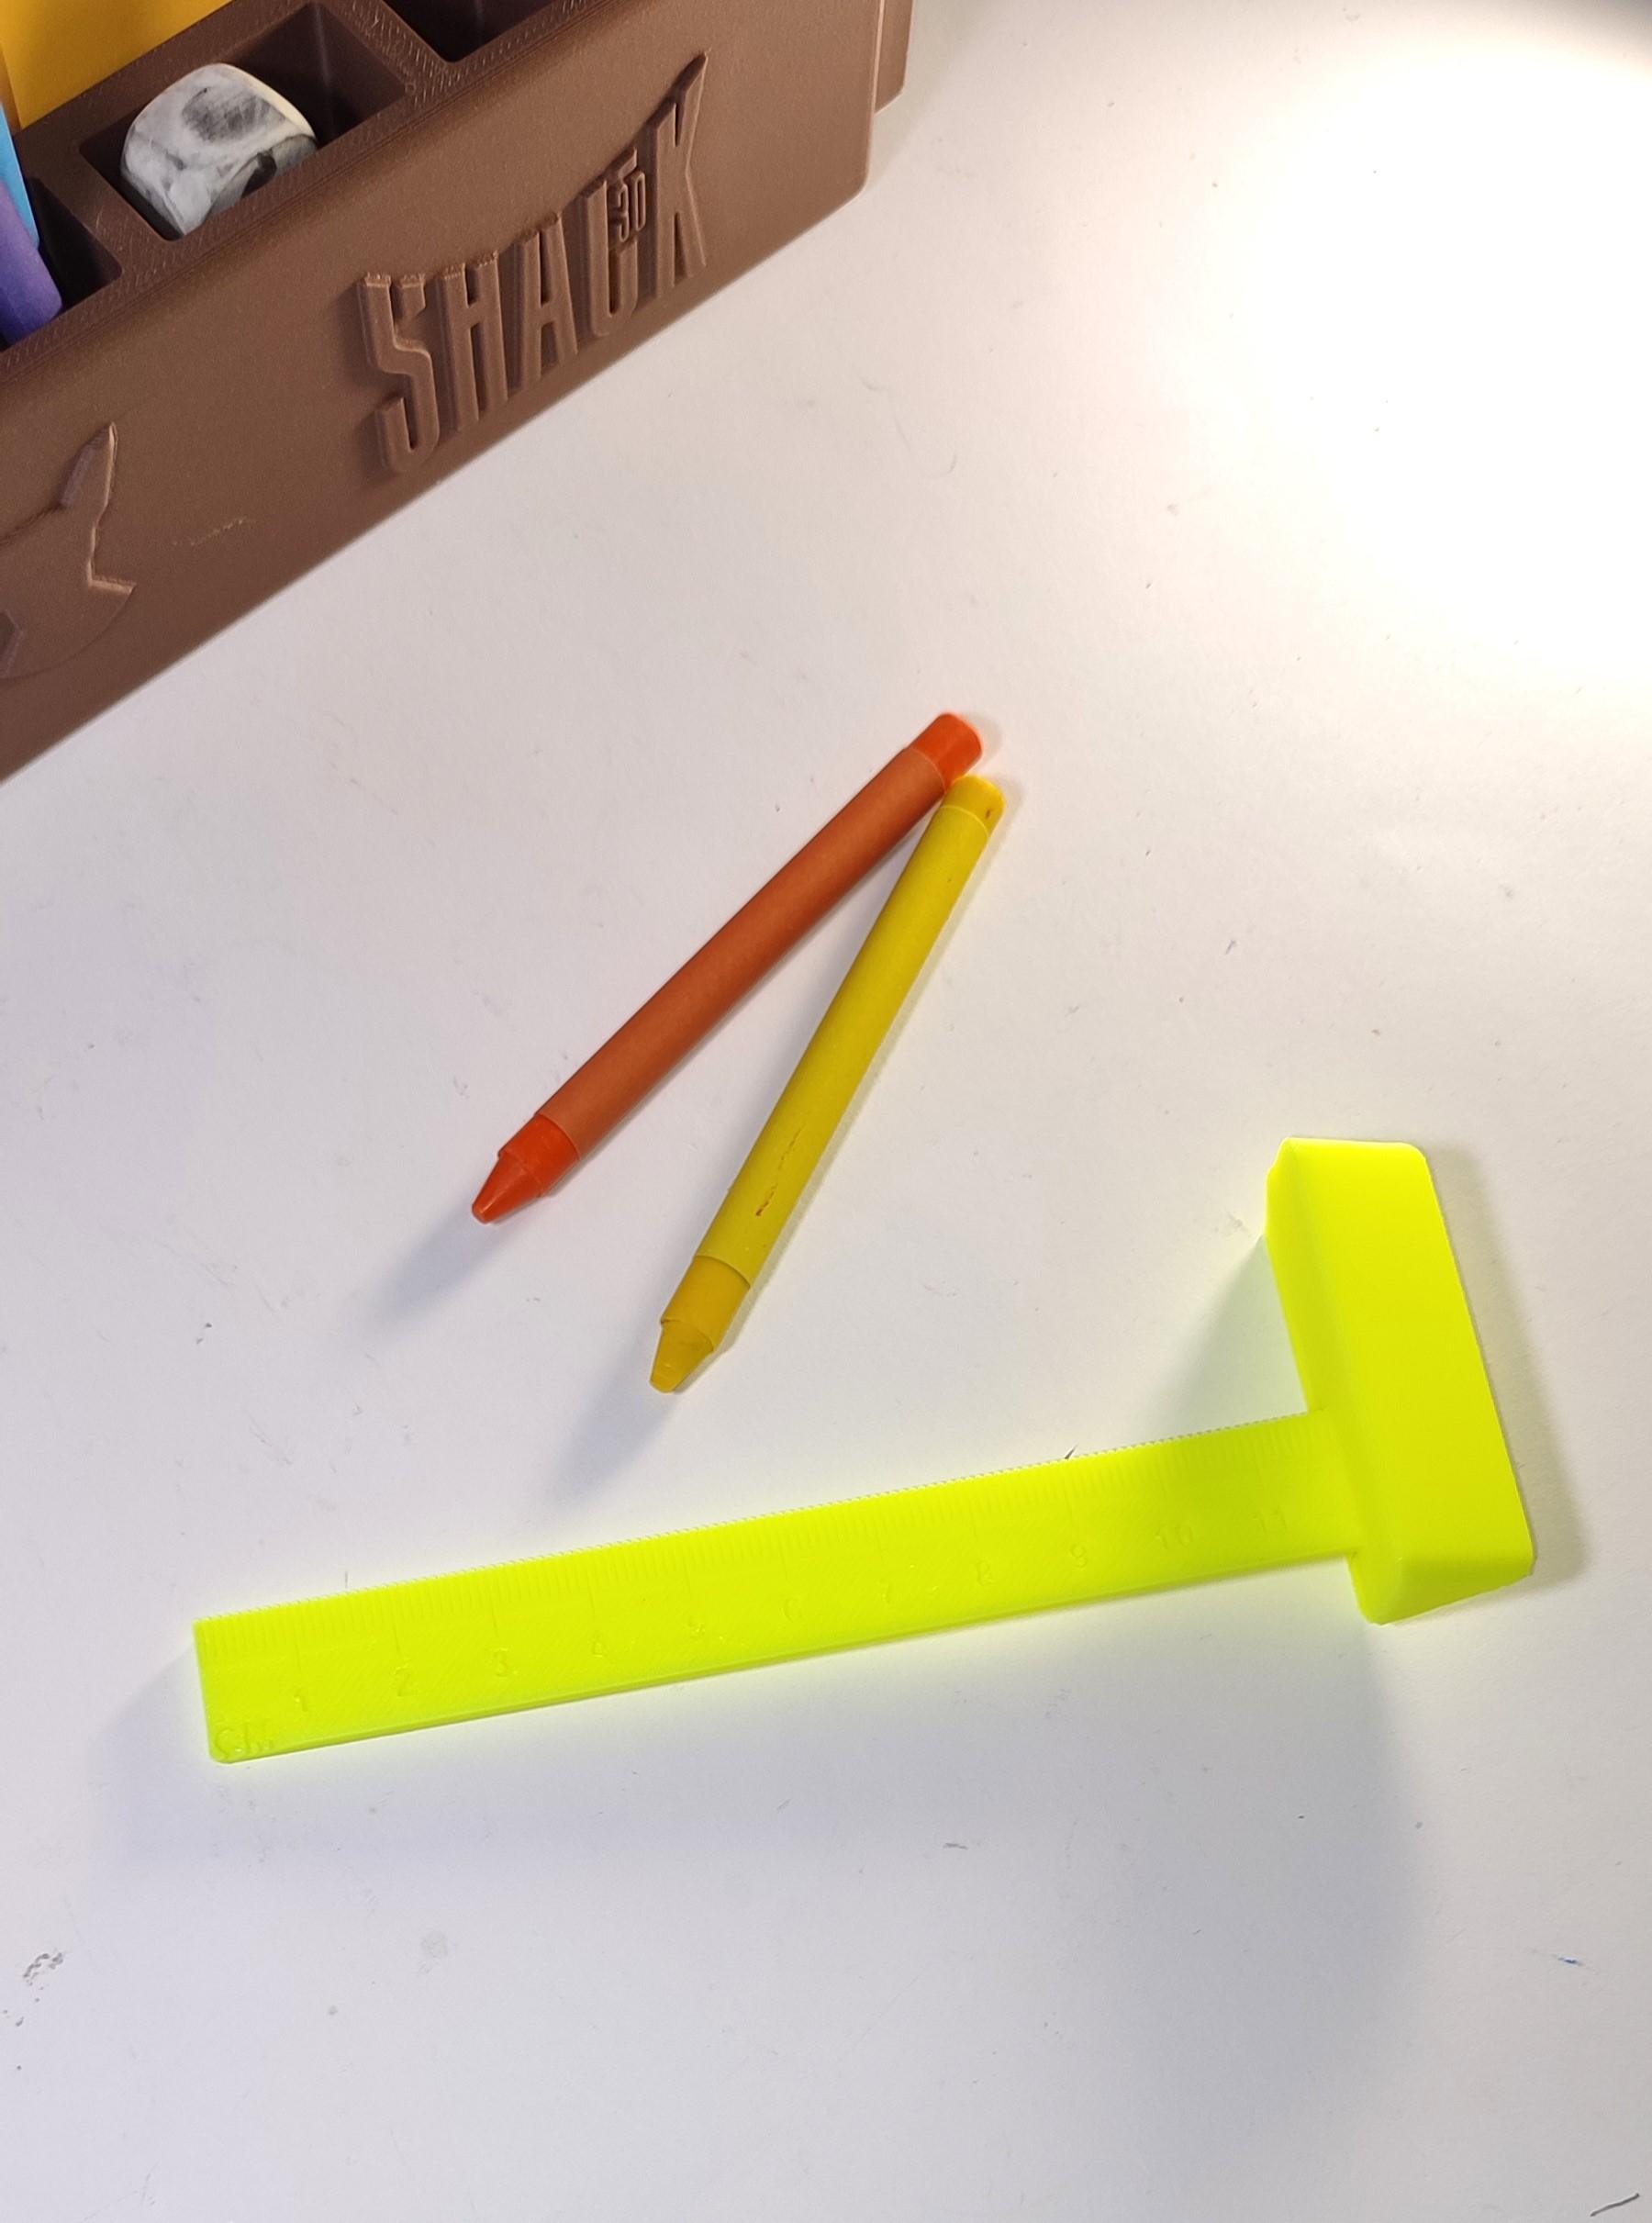  #BackToSchool Pencil Shack3D 3d model